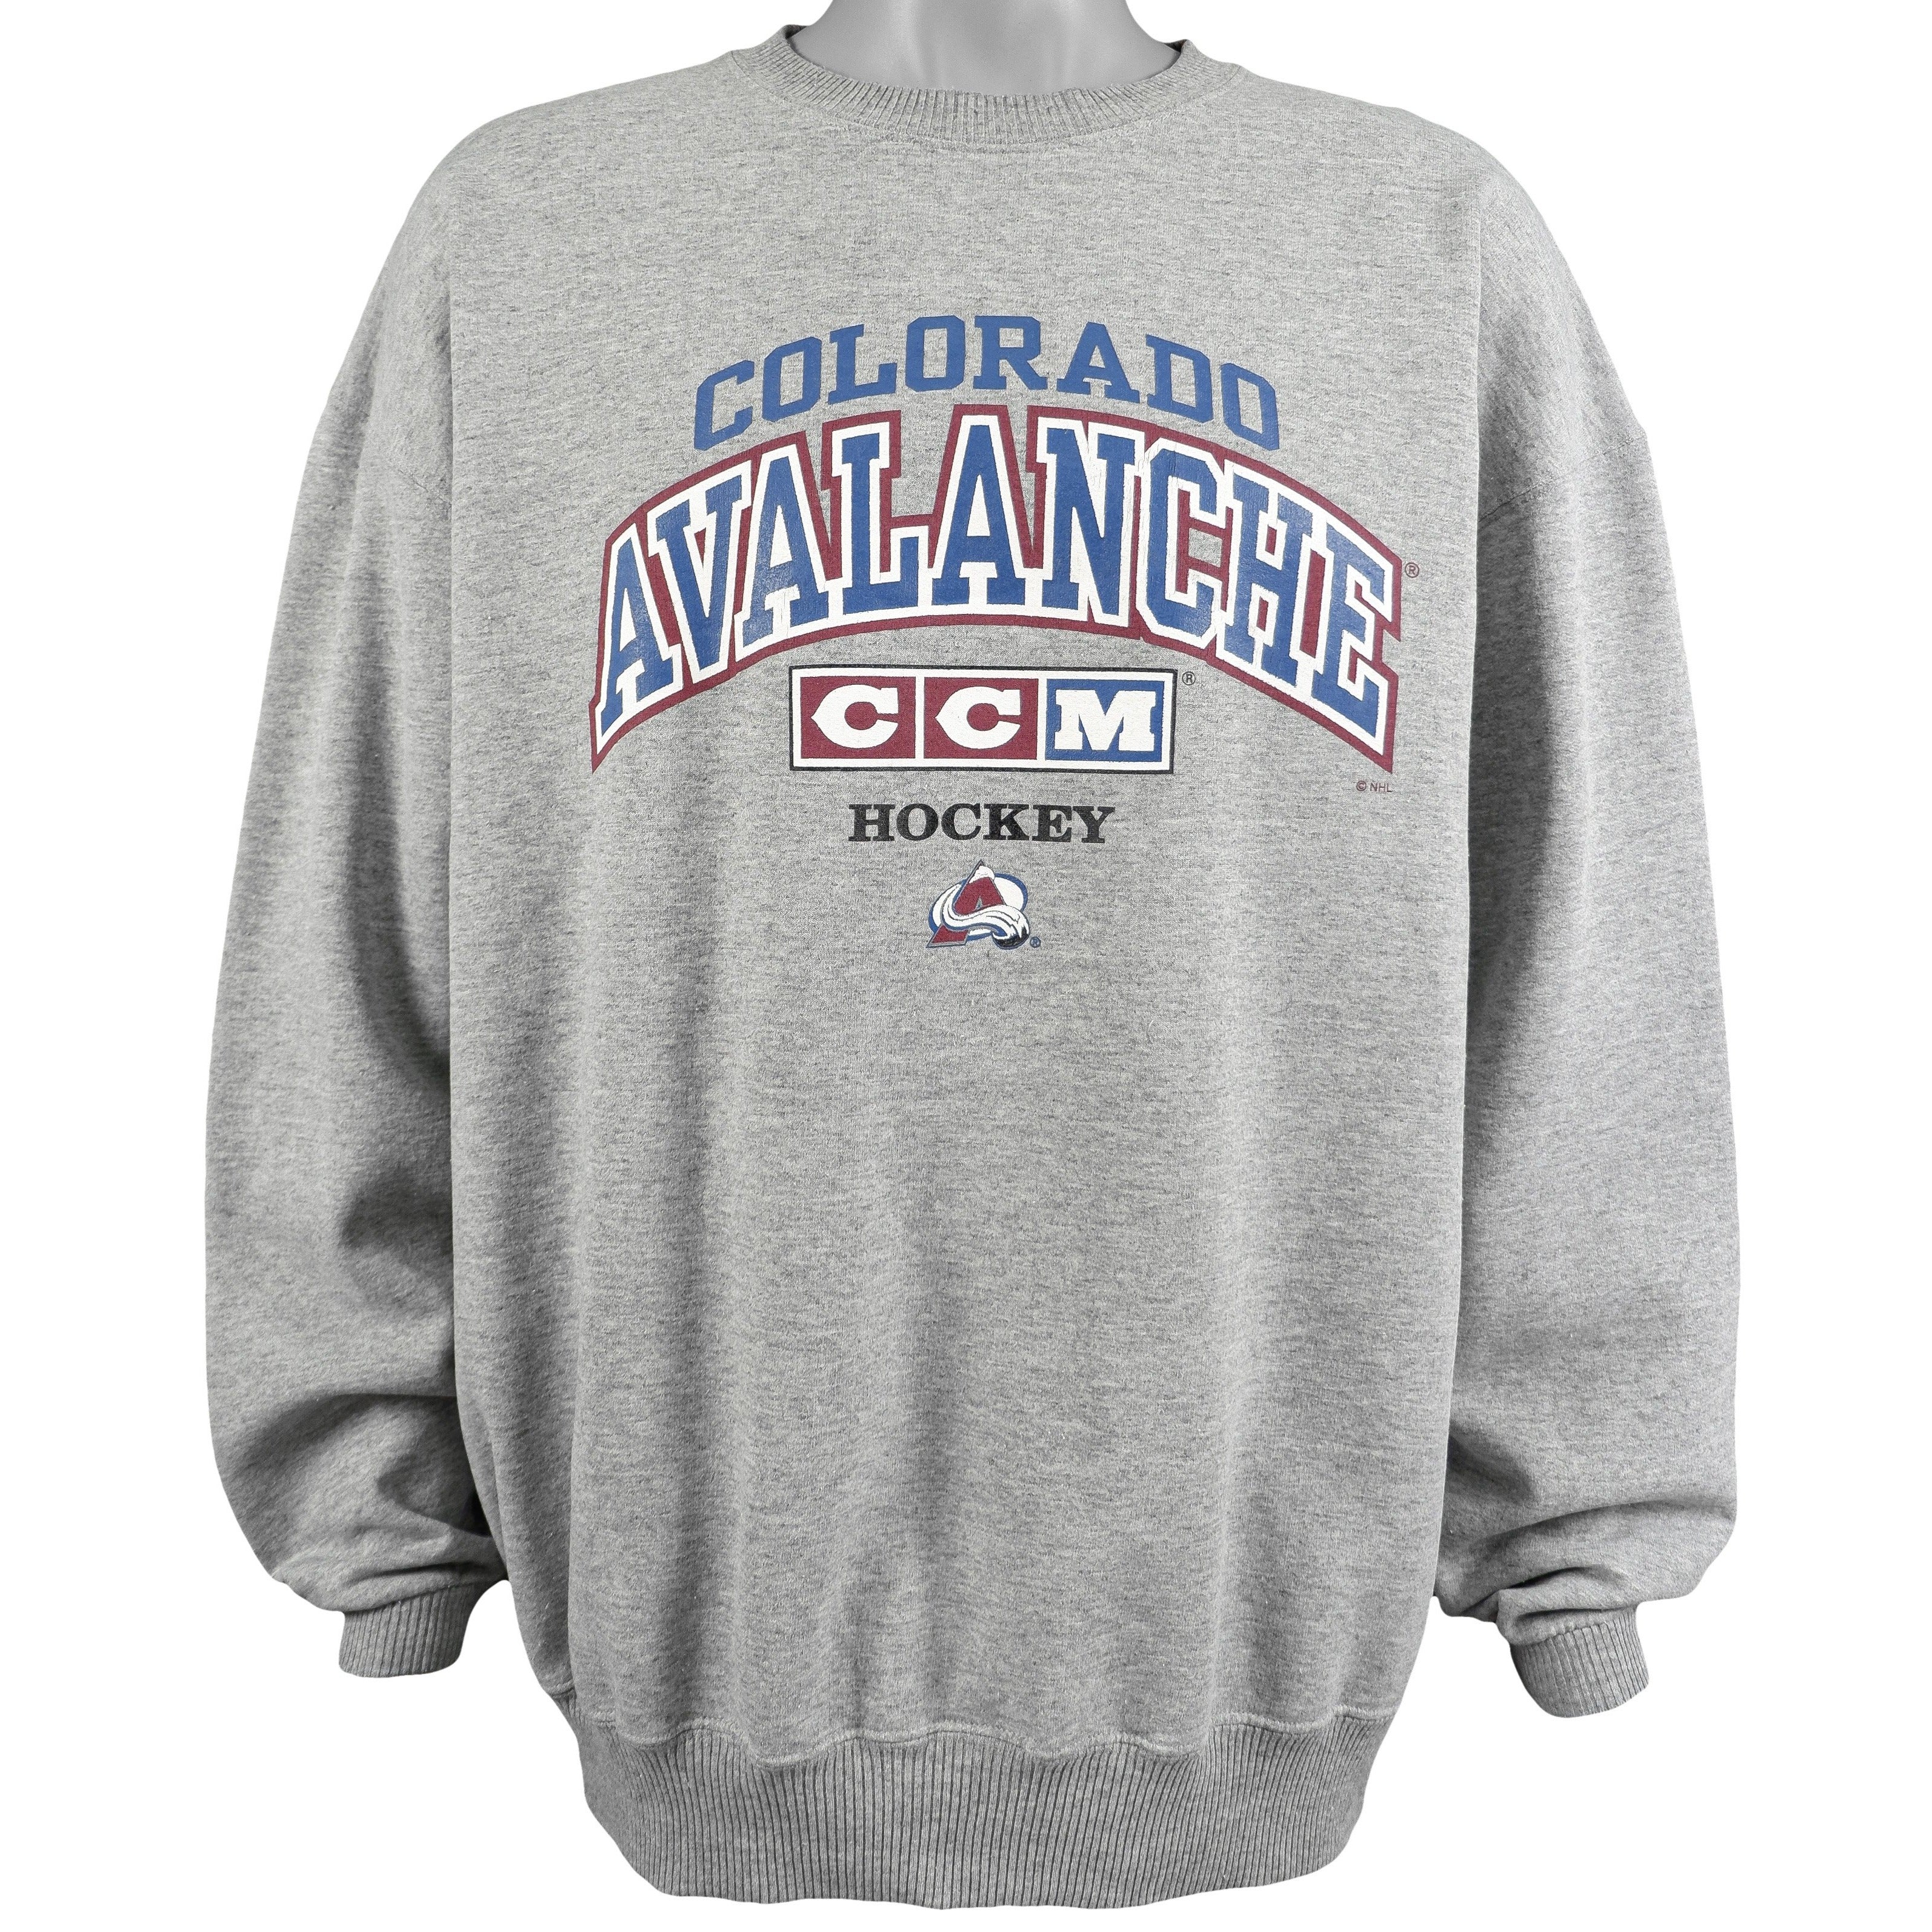 Colorado Avalanche 90's Retro NHL Crewneck Sweatshirt